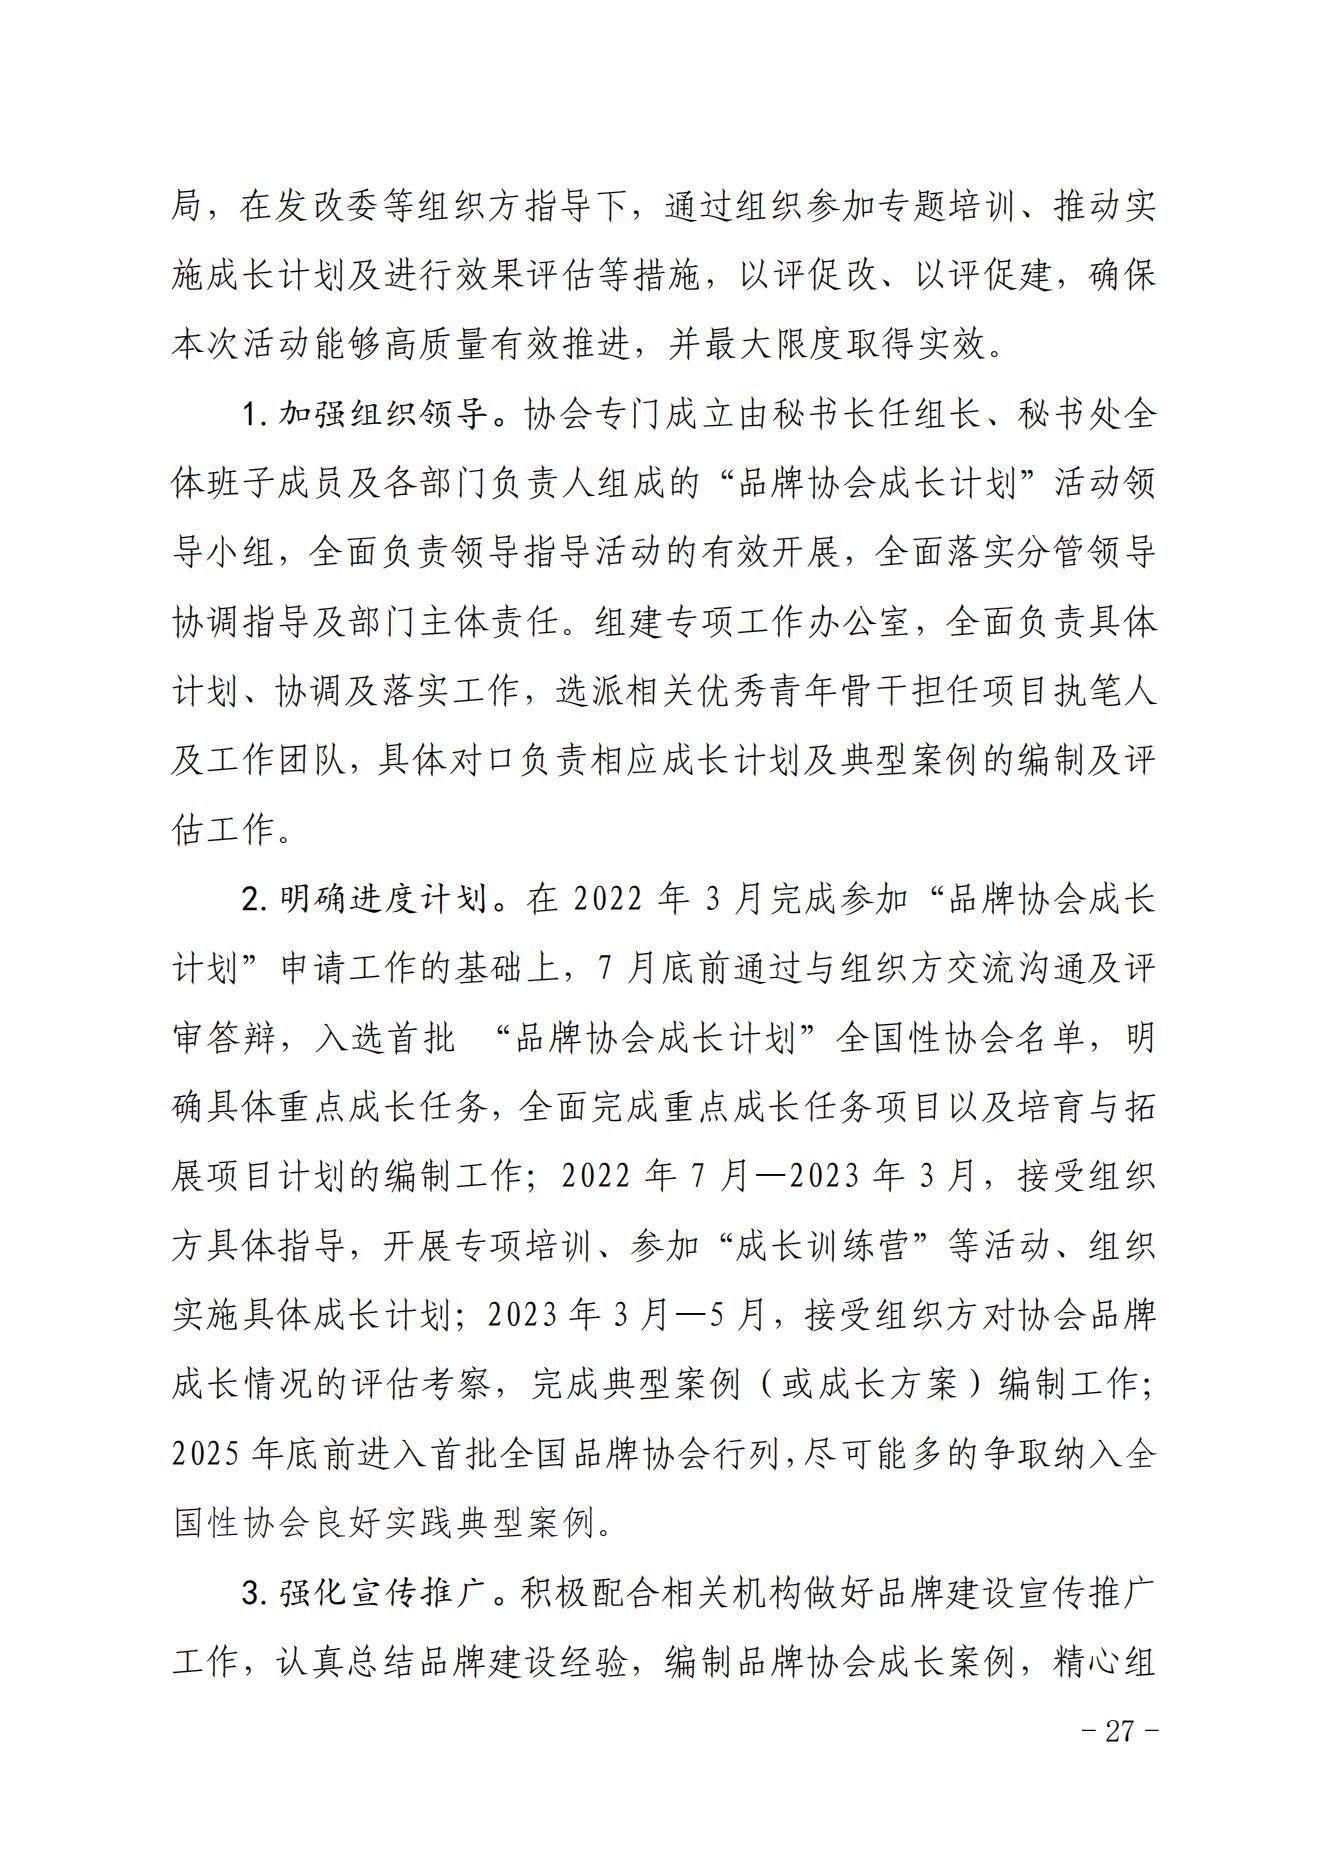 关于印发《中国核能行业协会“品牌协会成长计划”实施方案》的通知_26.jpg